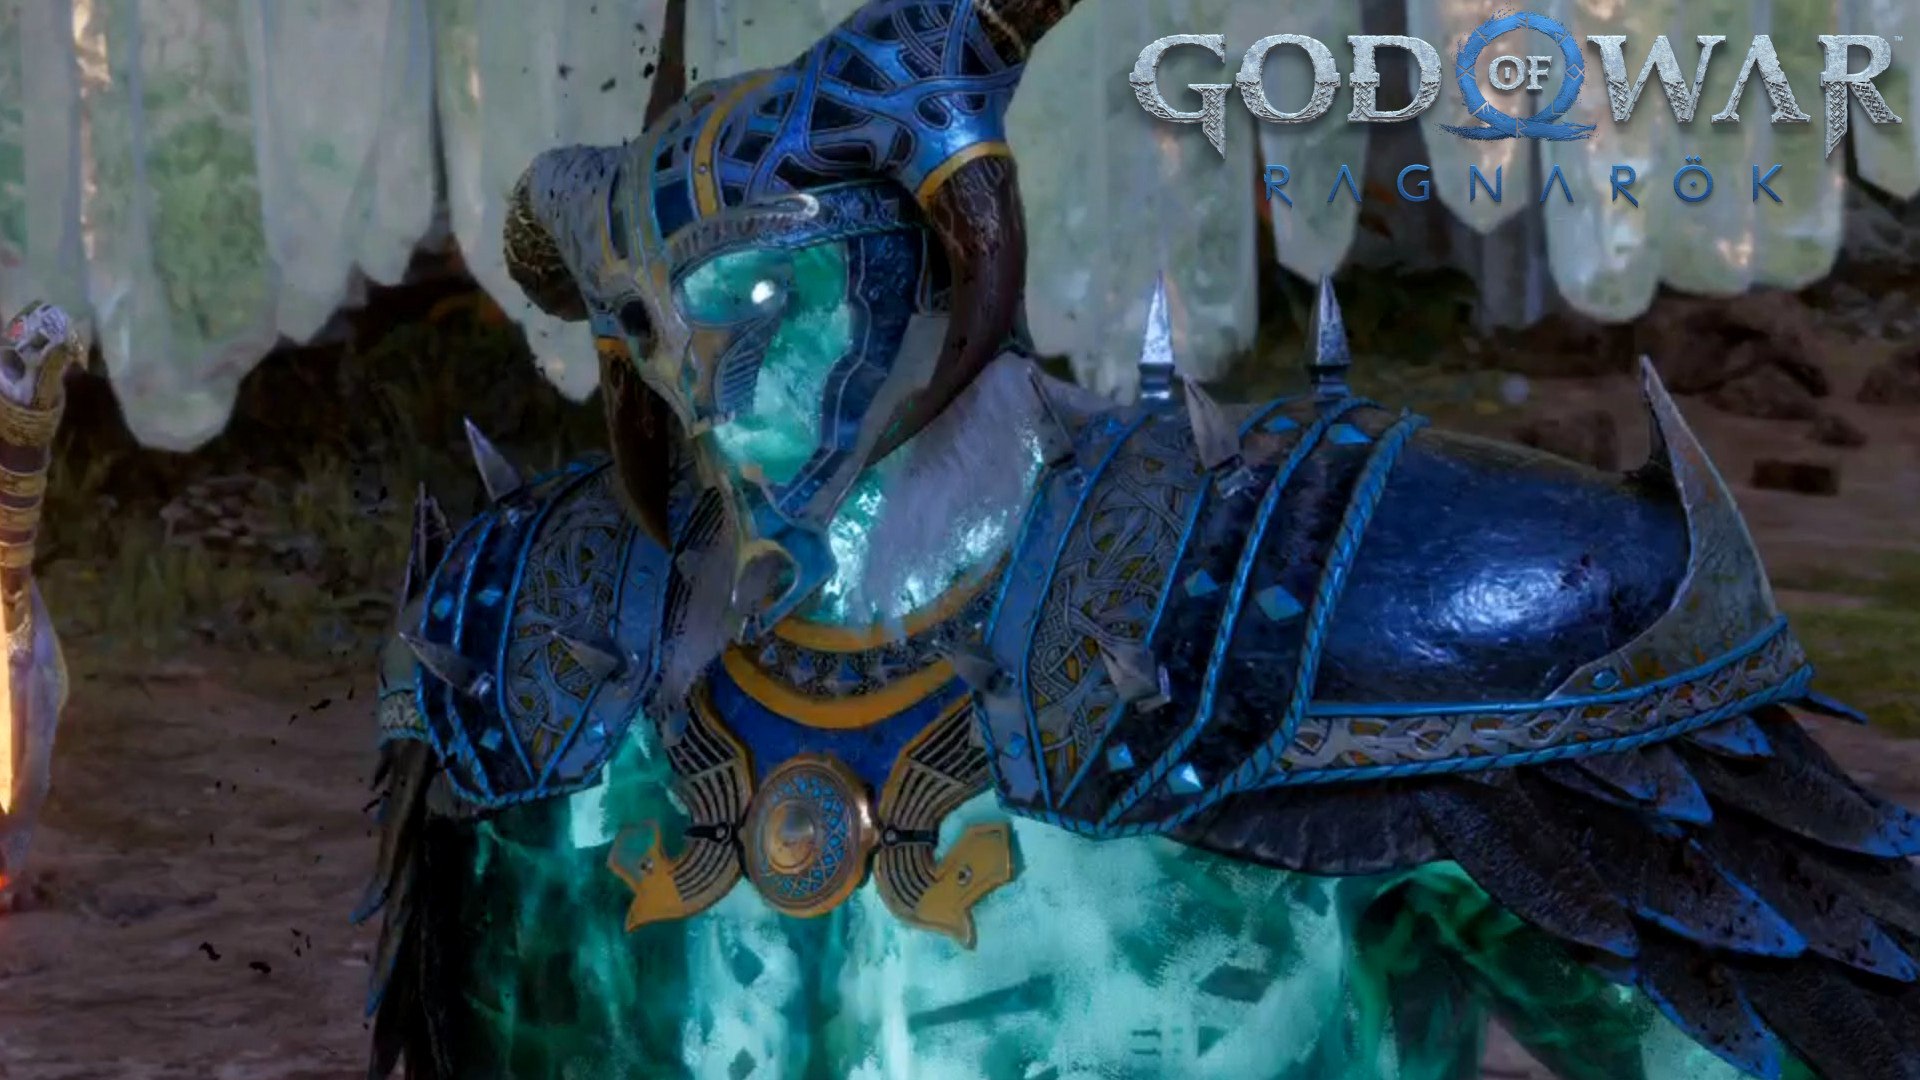 Heimdall God of War Ragnarok: How to beat this boss in Vanaheim